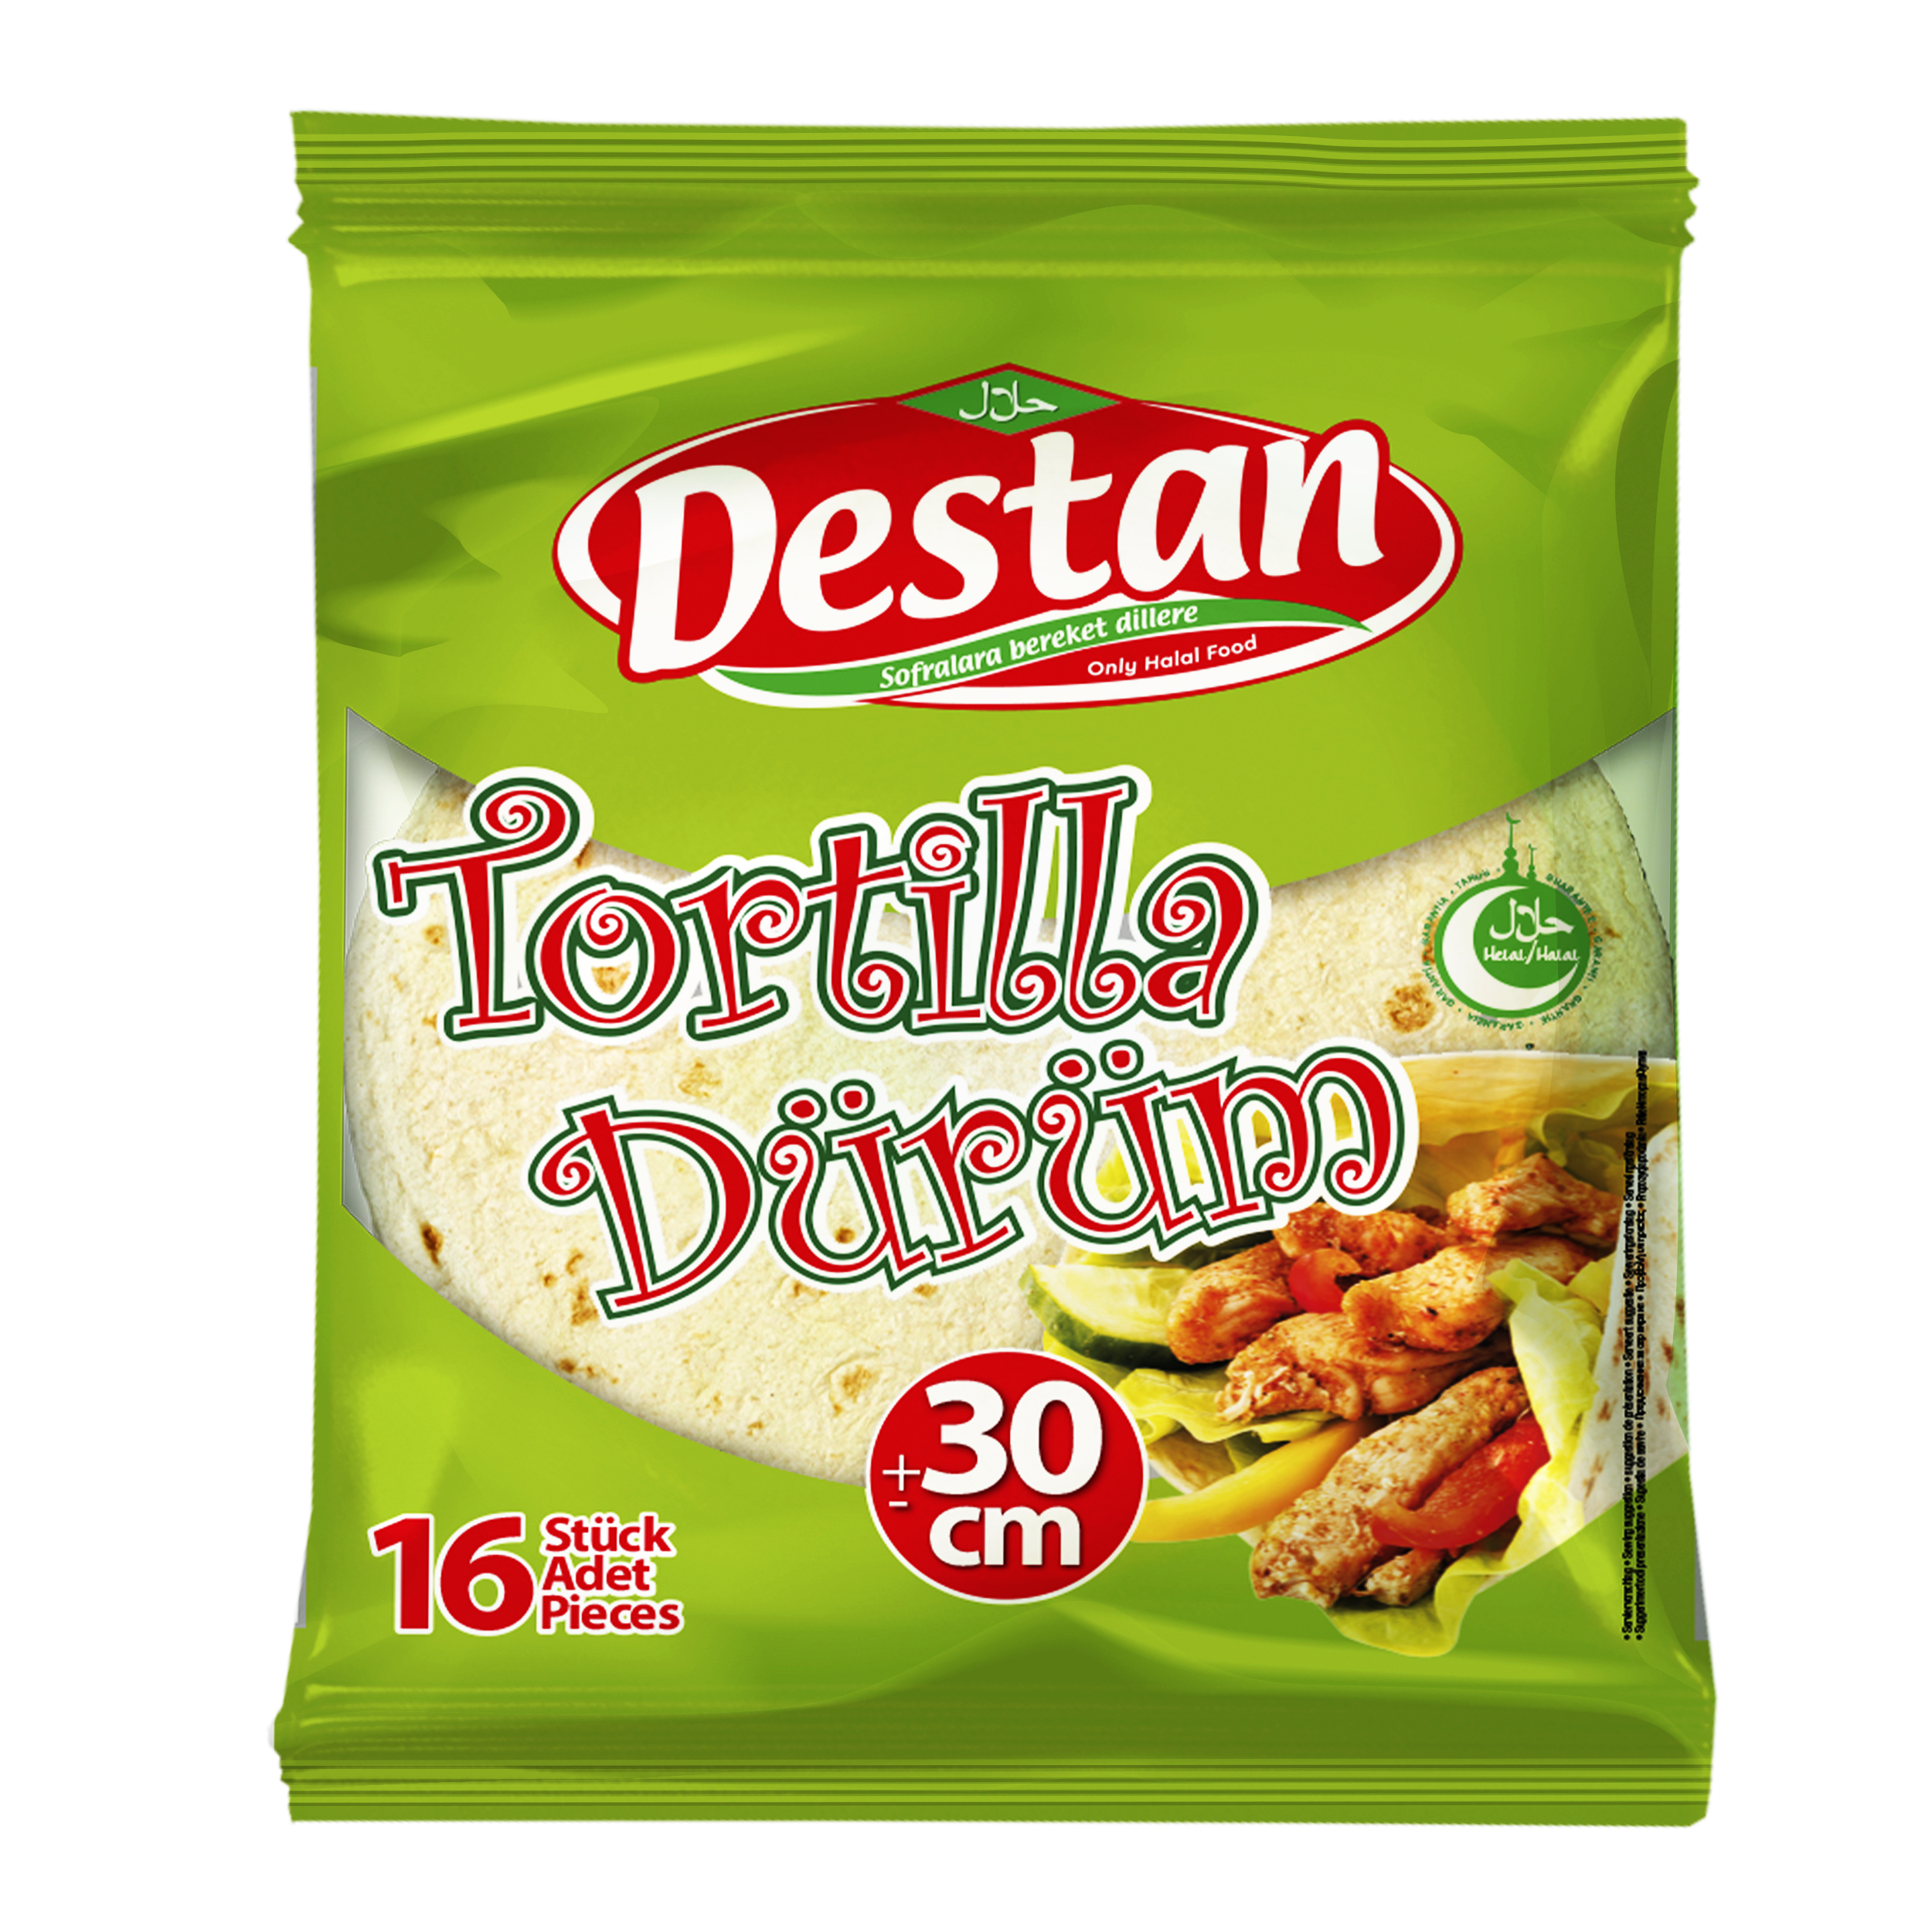 Destan Tortillas 16x30cm